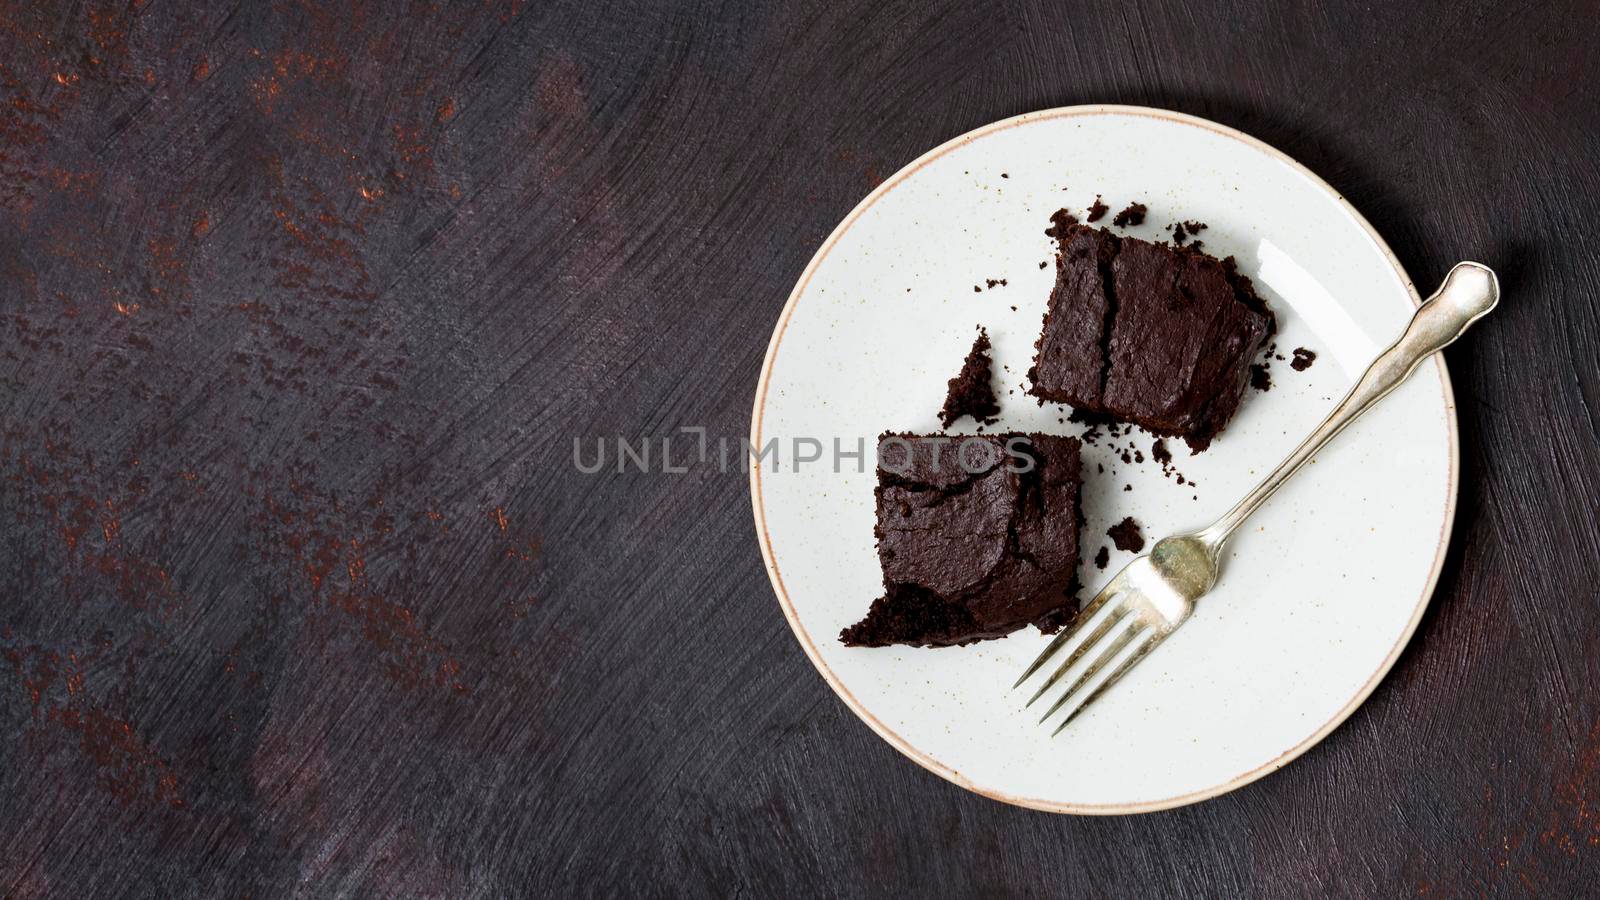 homemade cake made chocolate by Zahard